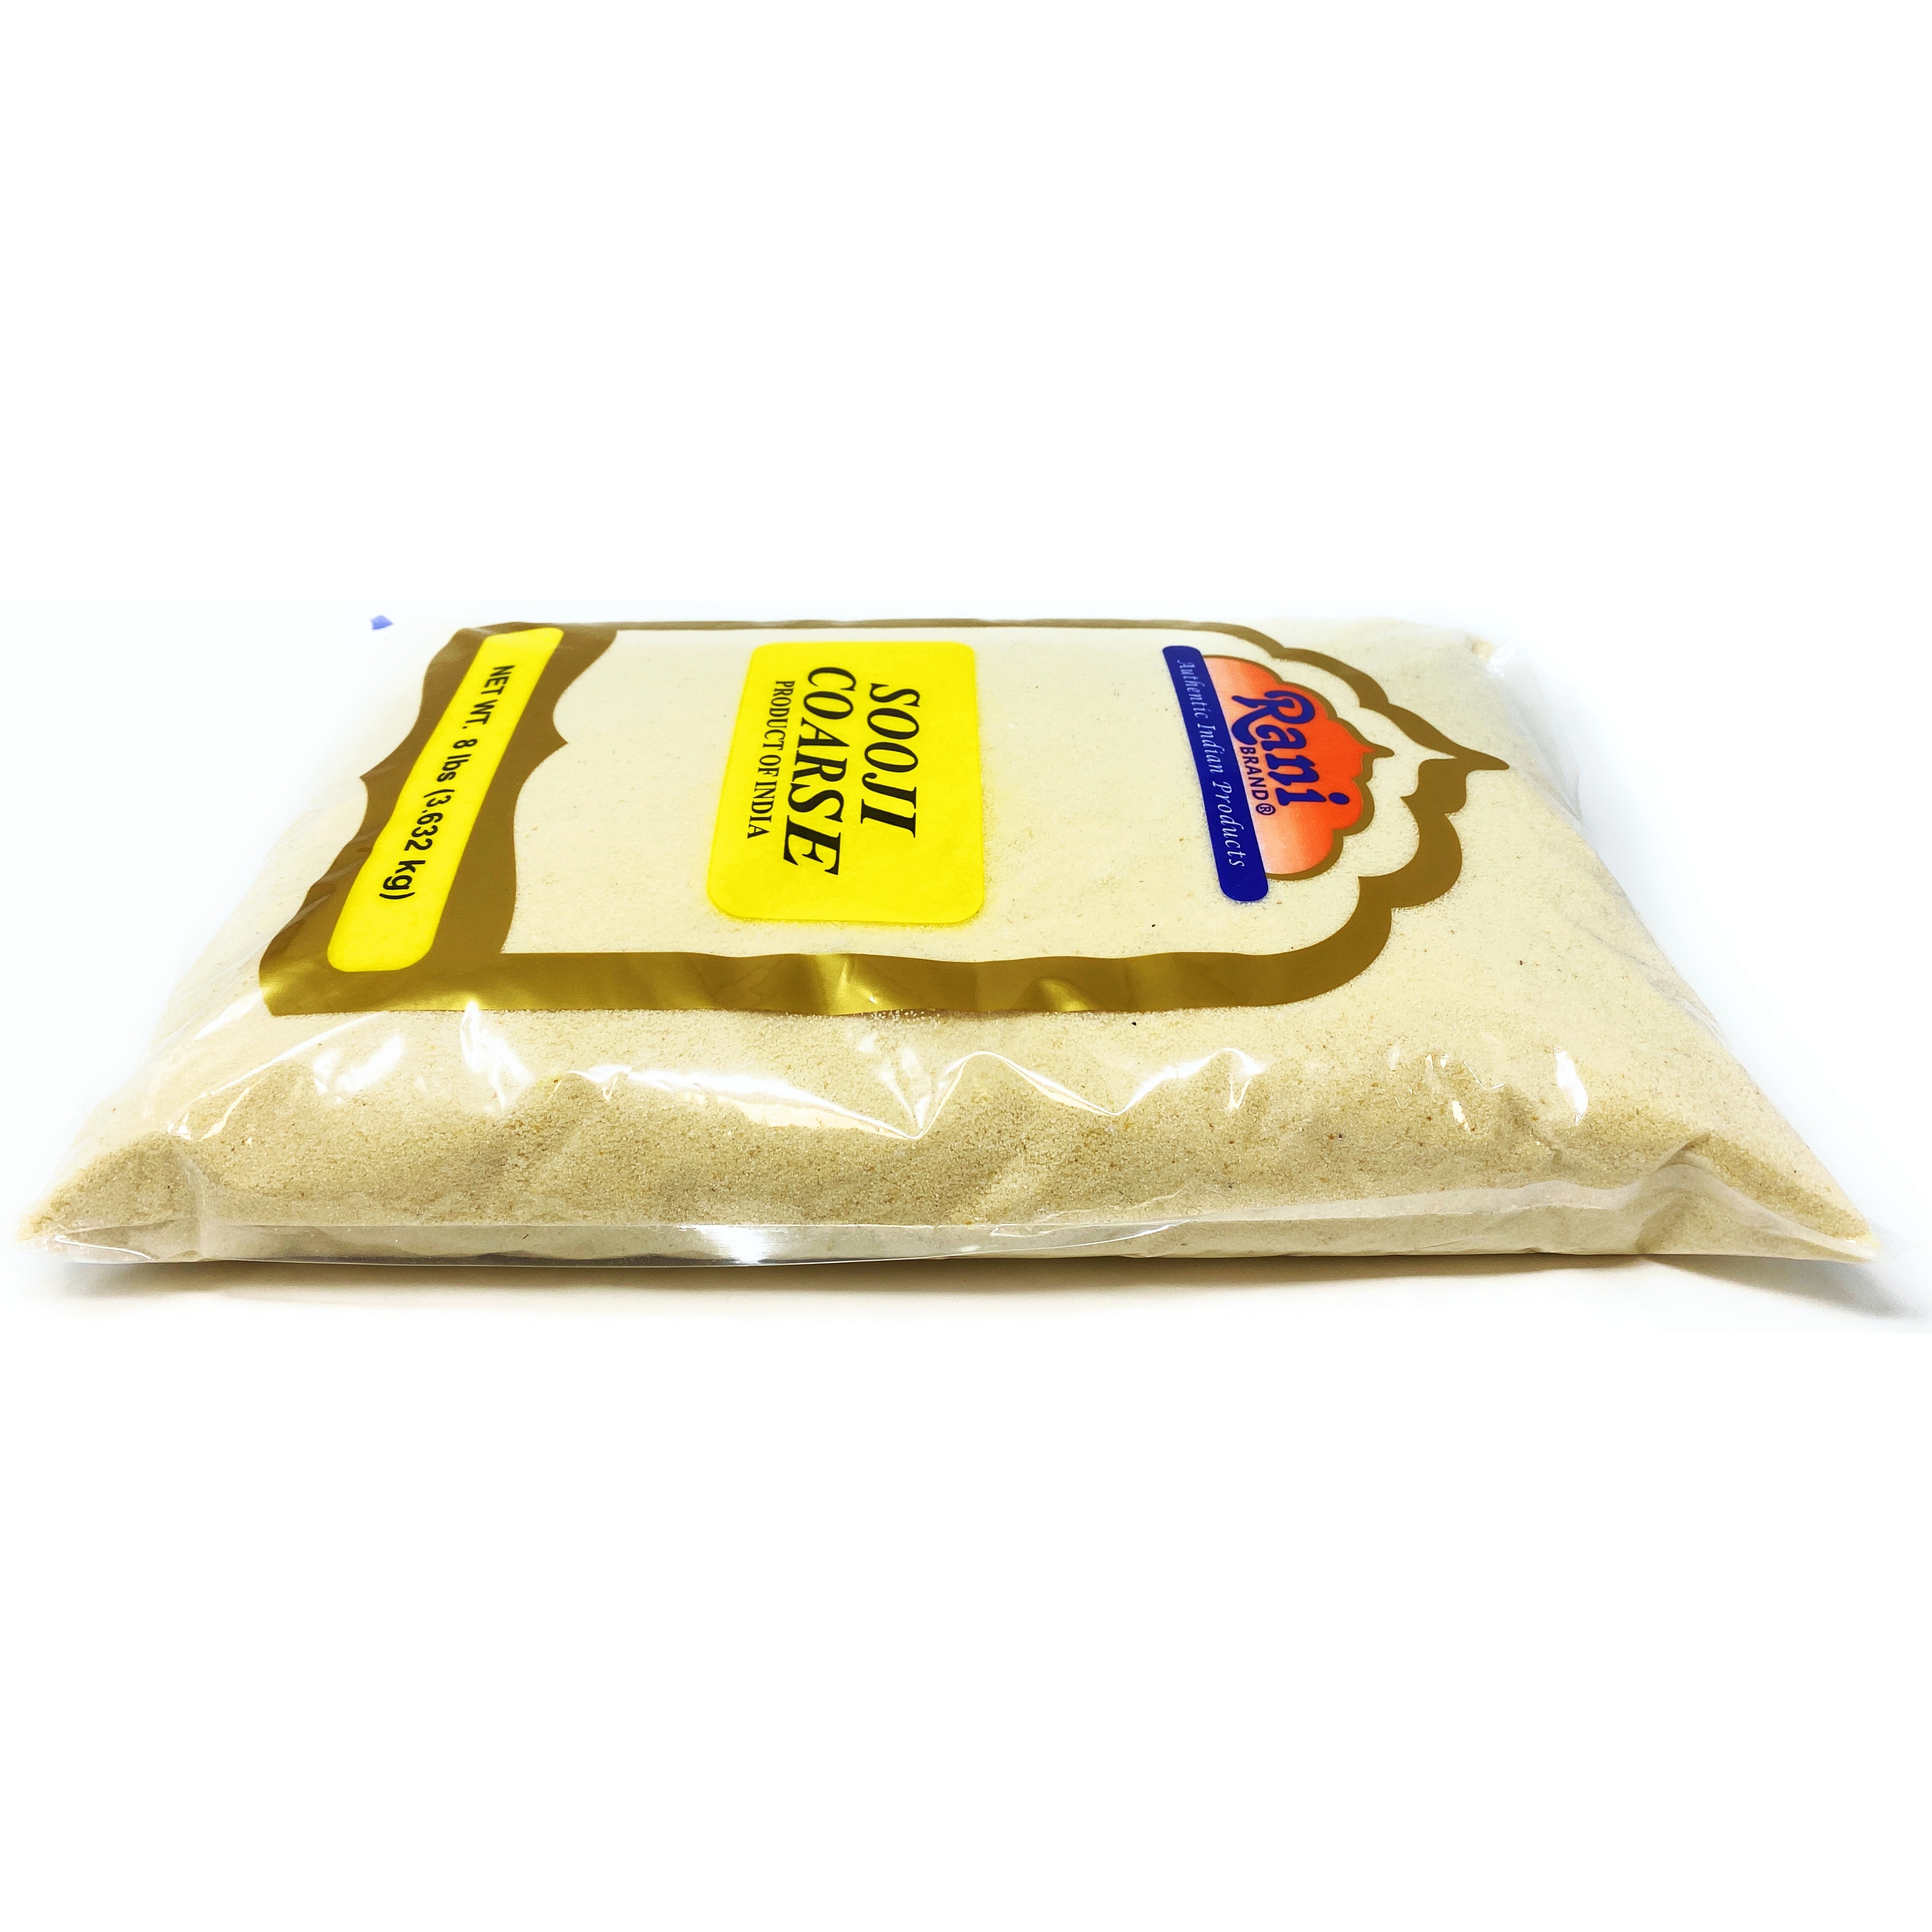 Rani Sooji Coarse (Farina, Suji, Rava, Rawa, Semolina) Flour 8lbs (128oz) ~ All Natural | Vegan | NON-GMO | Indian Origin